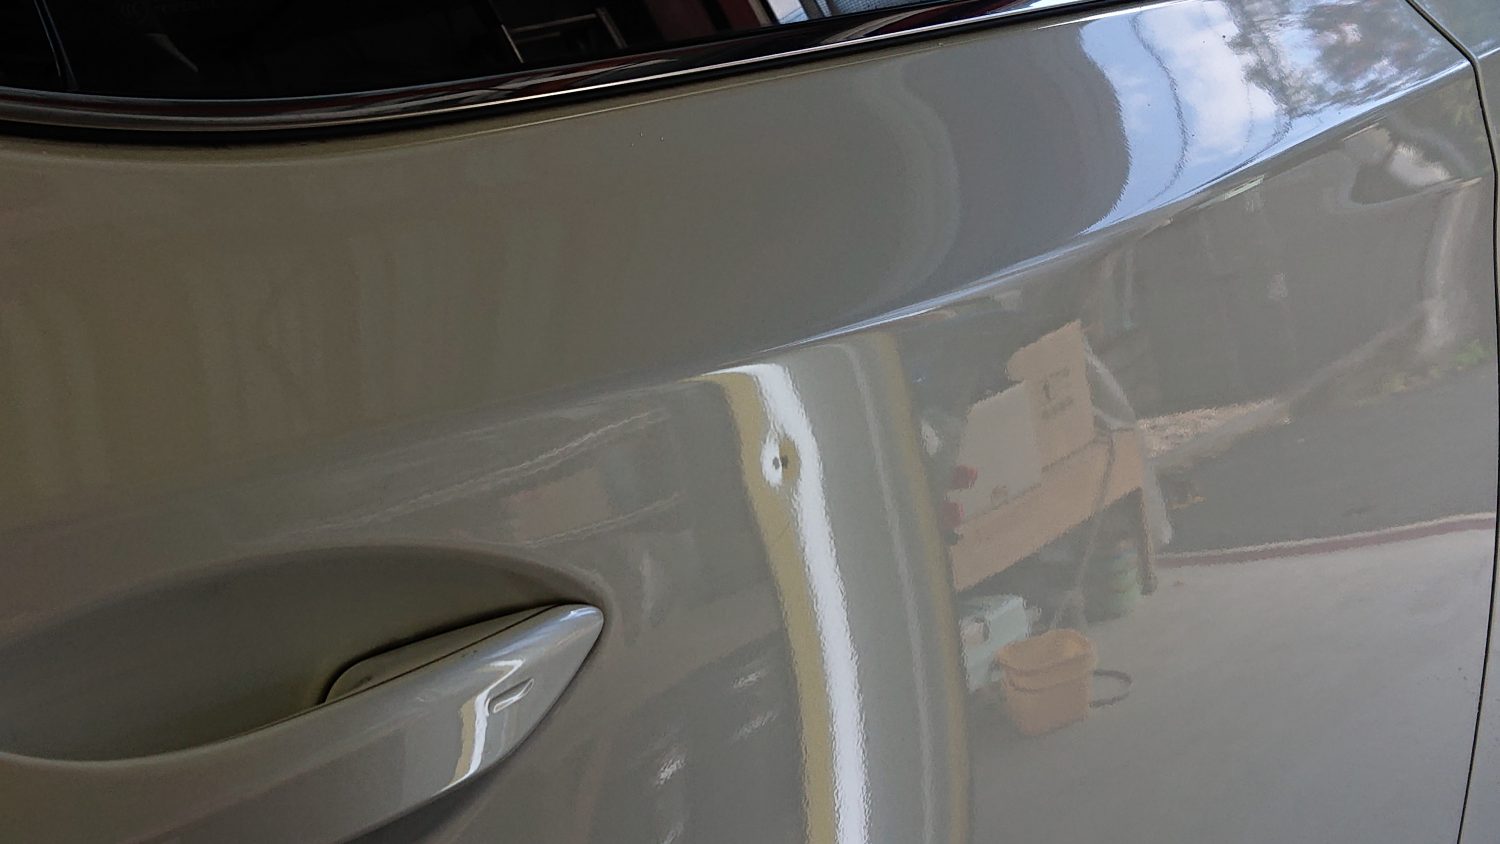 レクサスrx450h 右リアドアの凹み 奈良のデントリペア 車のへこみ修理ならカードッグ工房まで